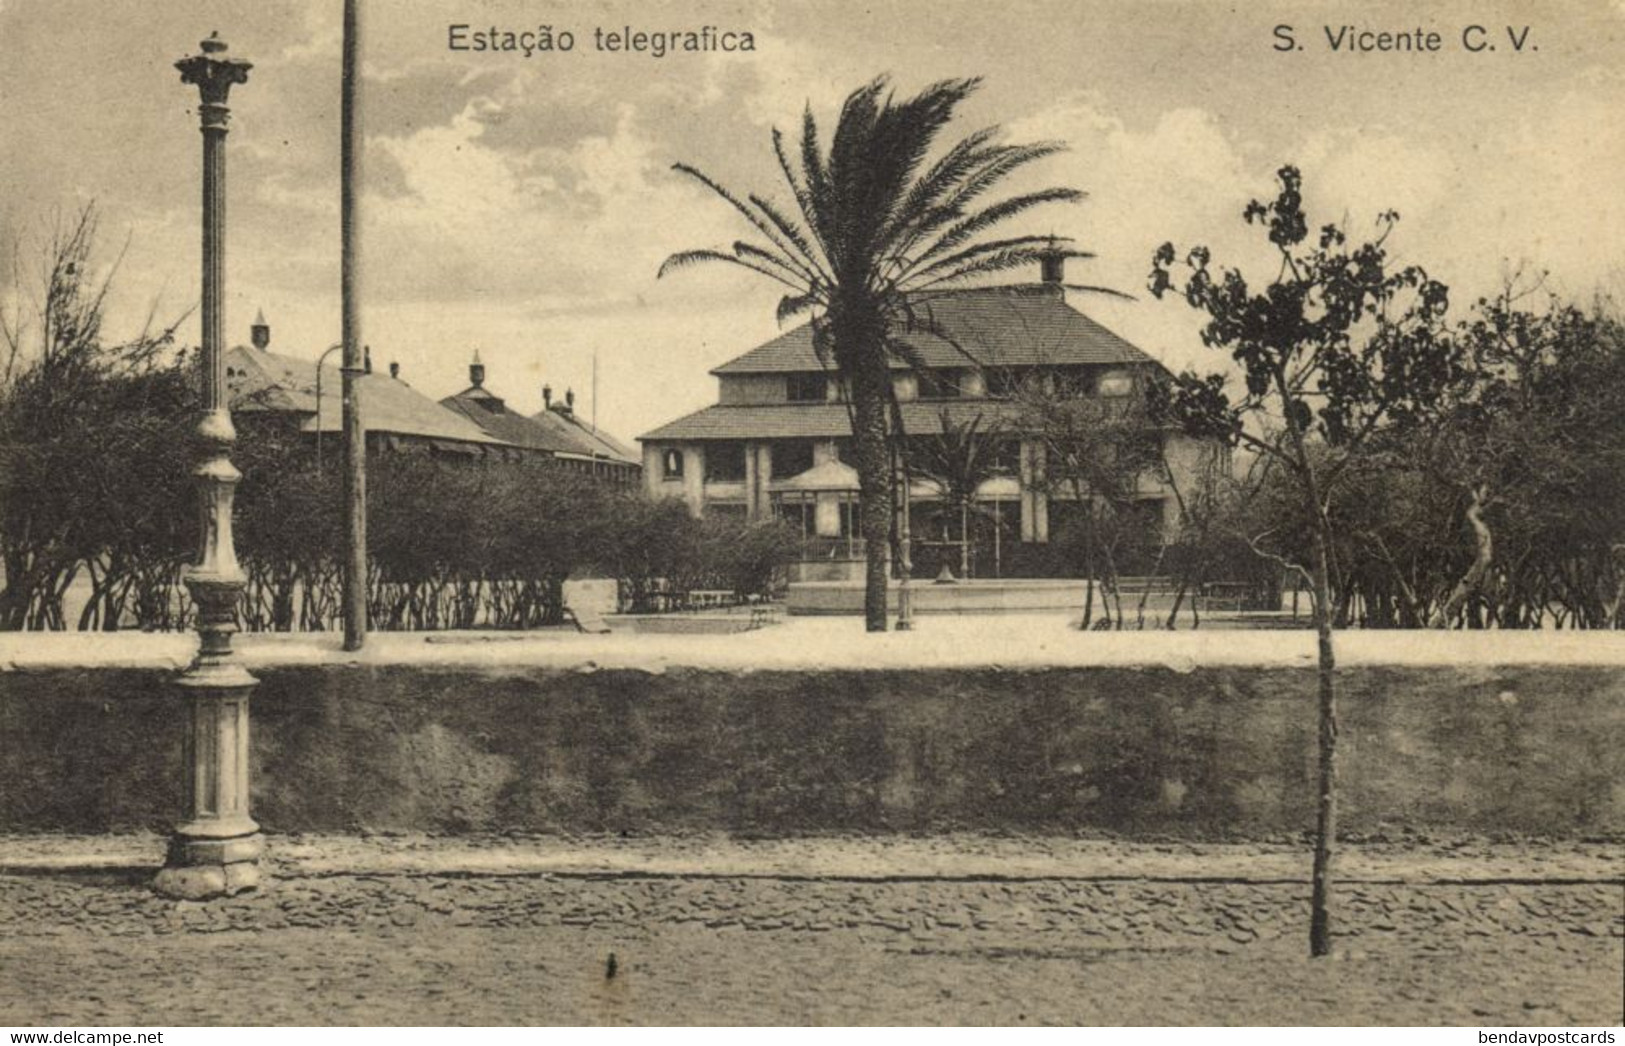 Cape Verde, SÃO VICENTE, Estação Telegrafica, Telegraph Station (1910s) Postcard - Cap Vert